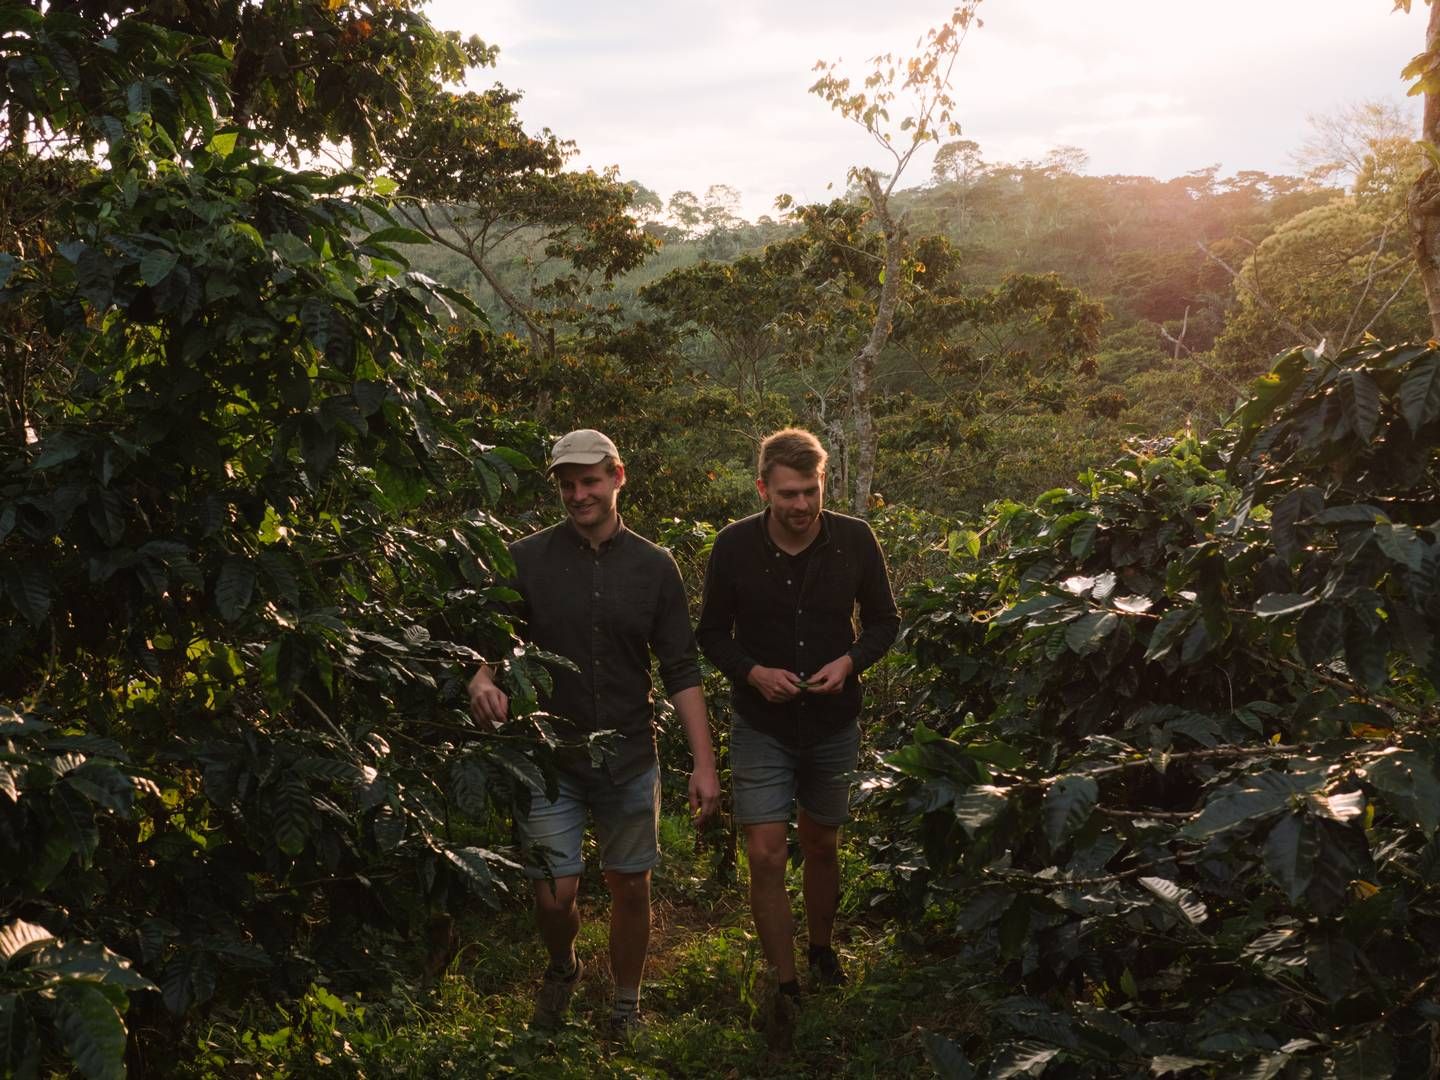 Ønsk er stiftet i 2017 af Andreas Kirk (tv.) og Rasmus Ditlev (th.). Selskabet har til formål at arbejde tæt sammen med kaffebønder i Nicaragua og Peru, for at fodre en klimavenlig produktion af kaffe. | Foto: Ønsk Kaffe / Pr